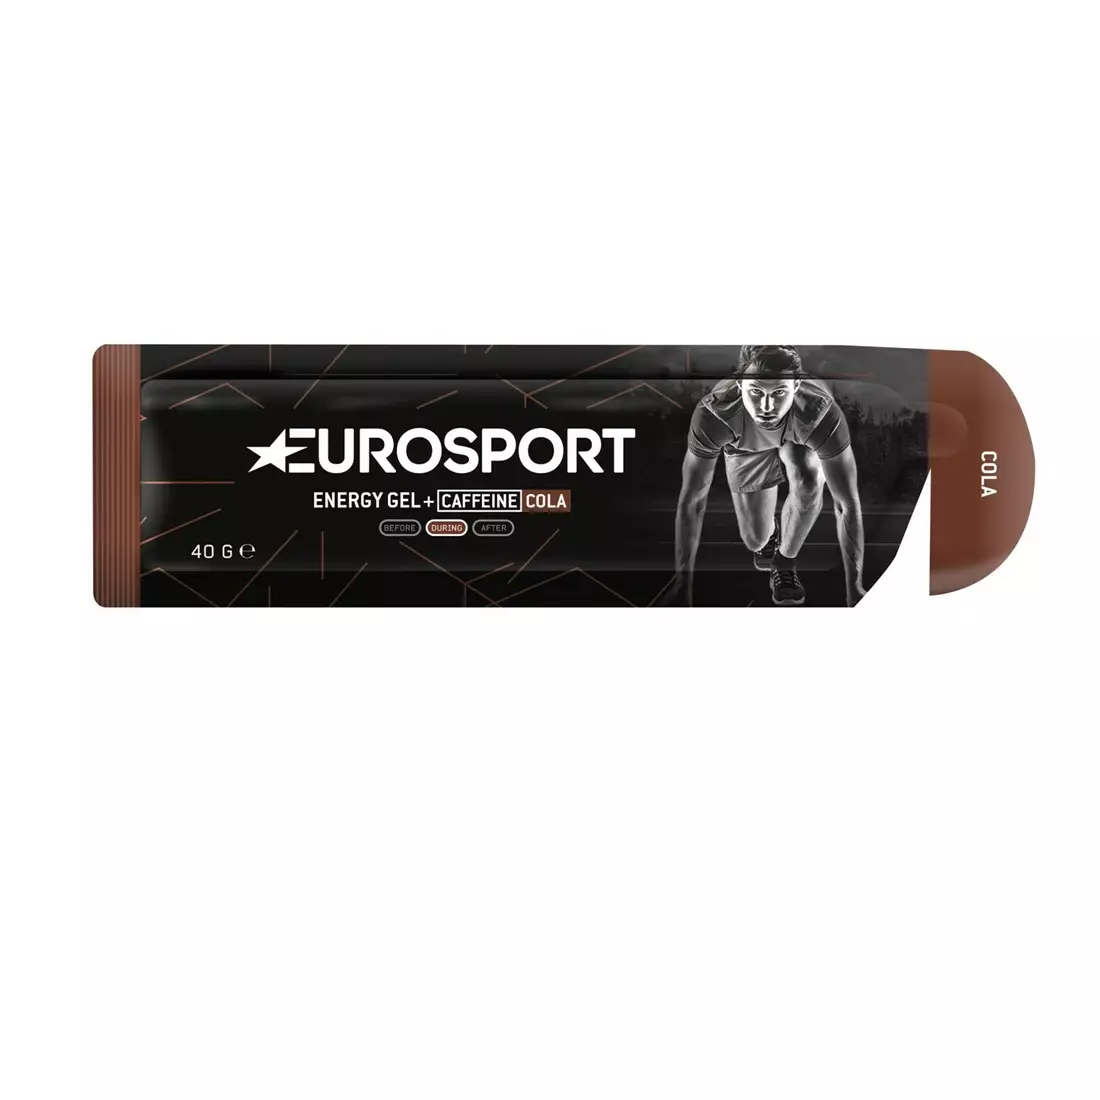 EUROSPORT energy gel NUTRITION cola +caffeine 40g E0030